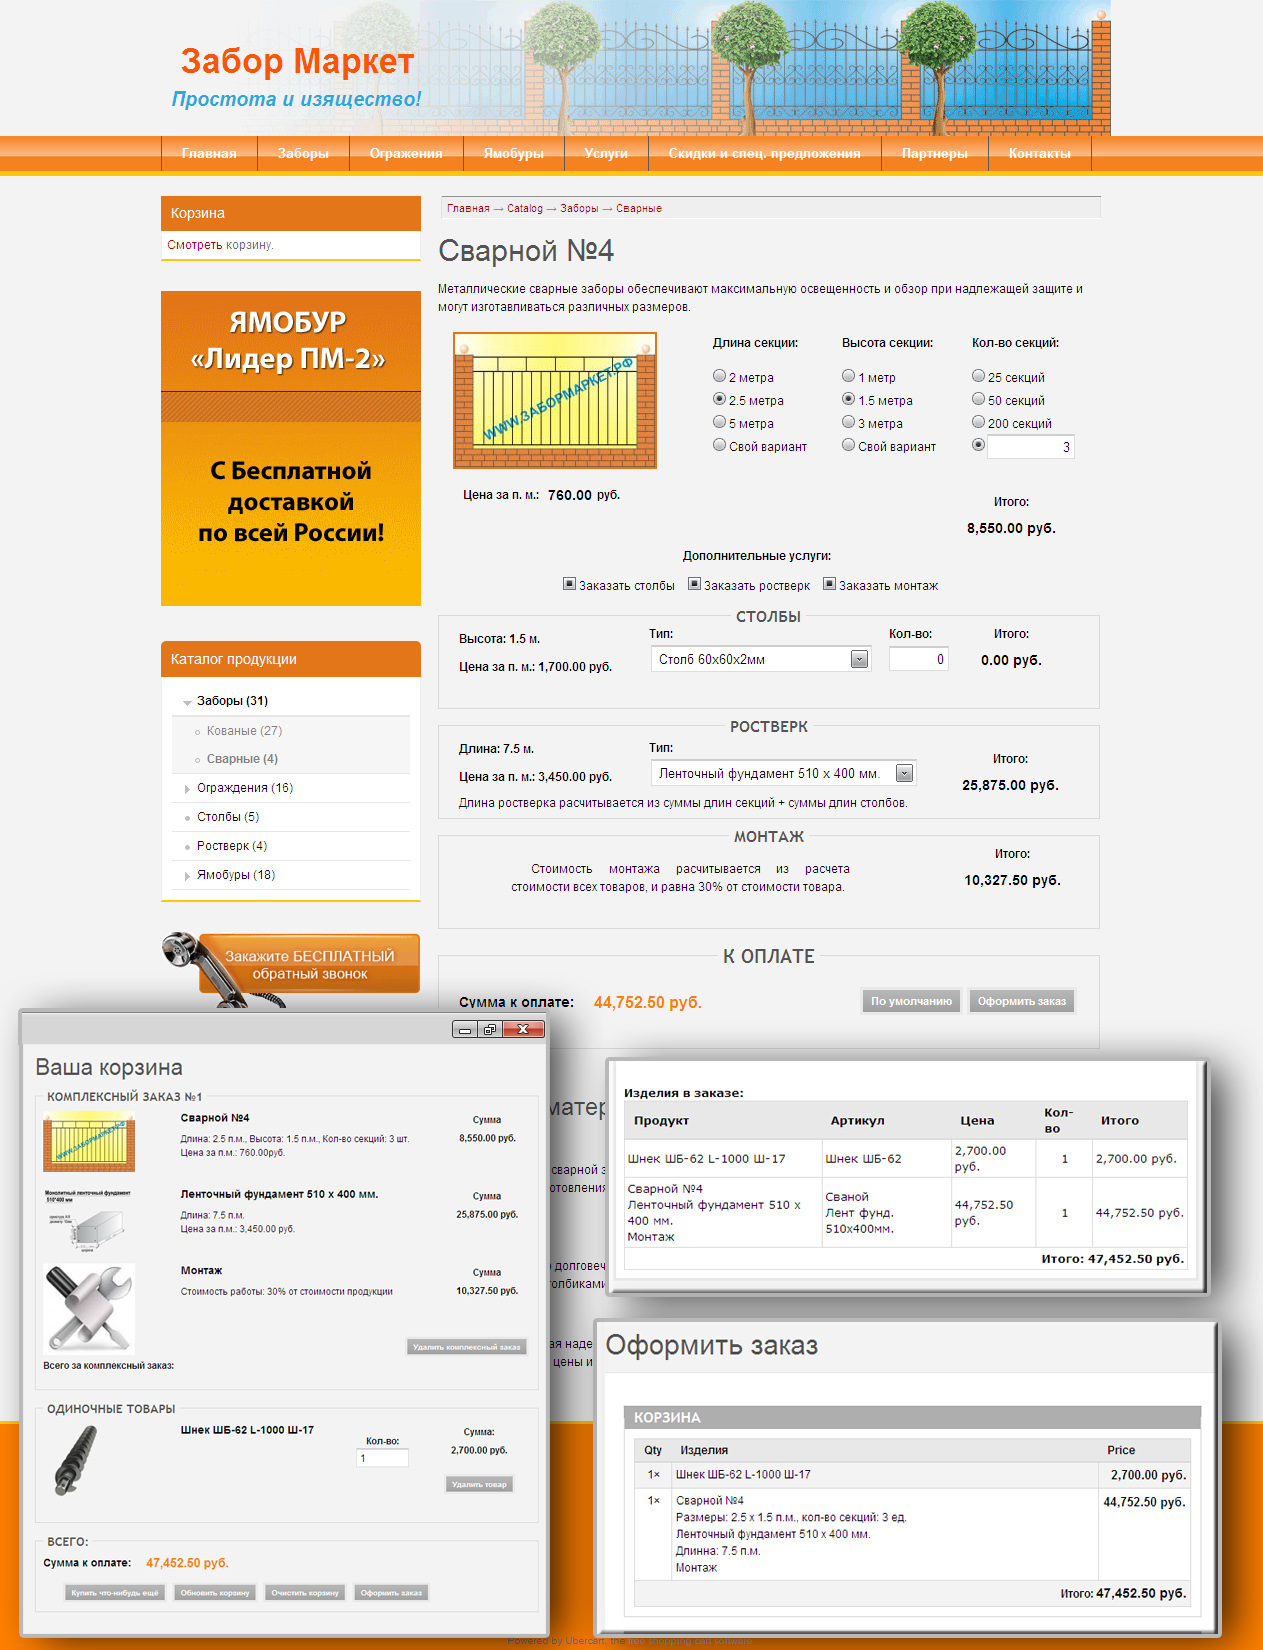 Создание калькулятора товаров для сайта http://забормаркет.рф